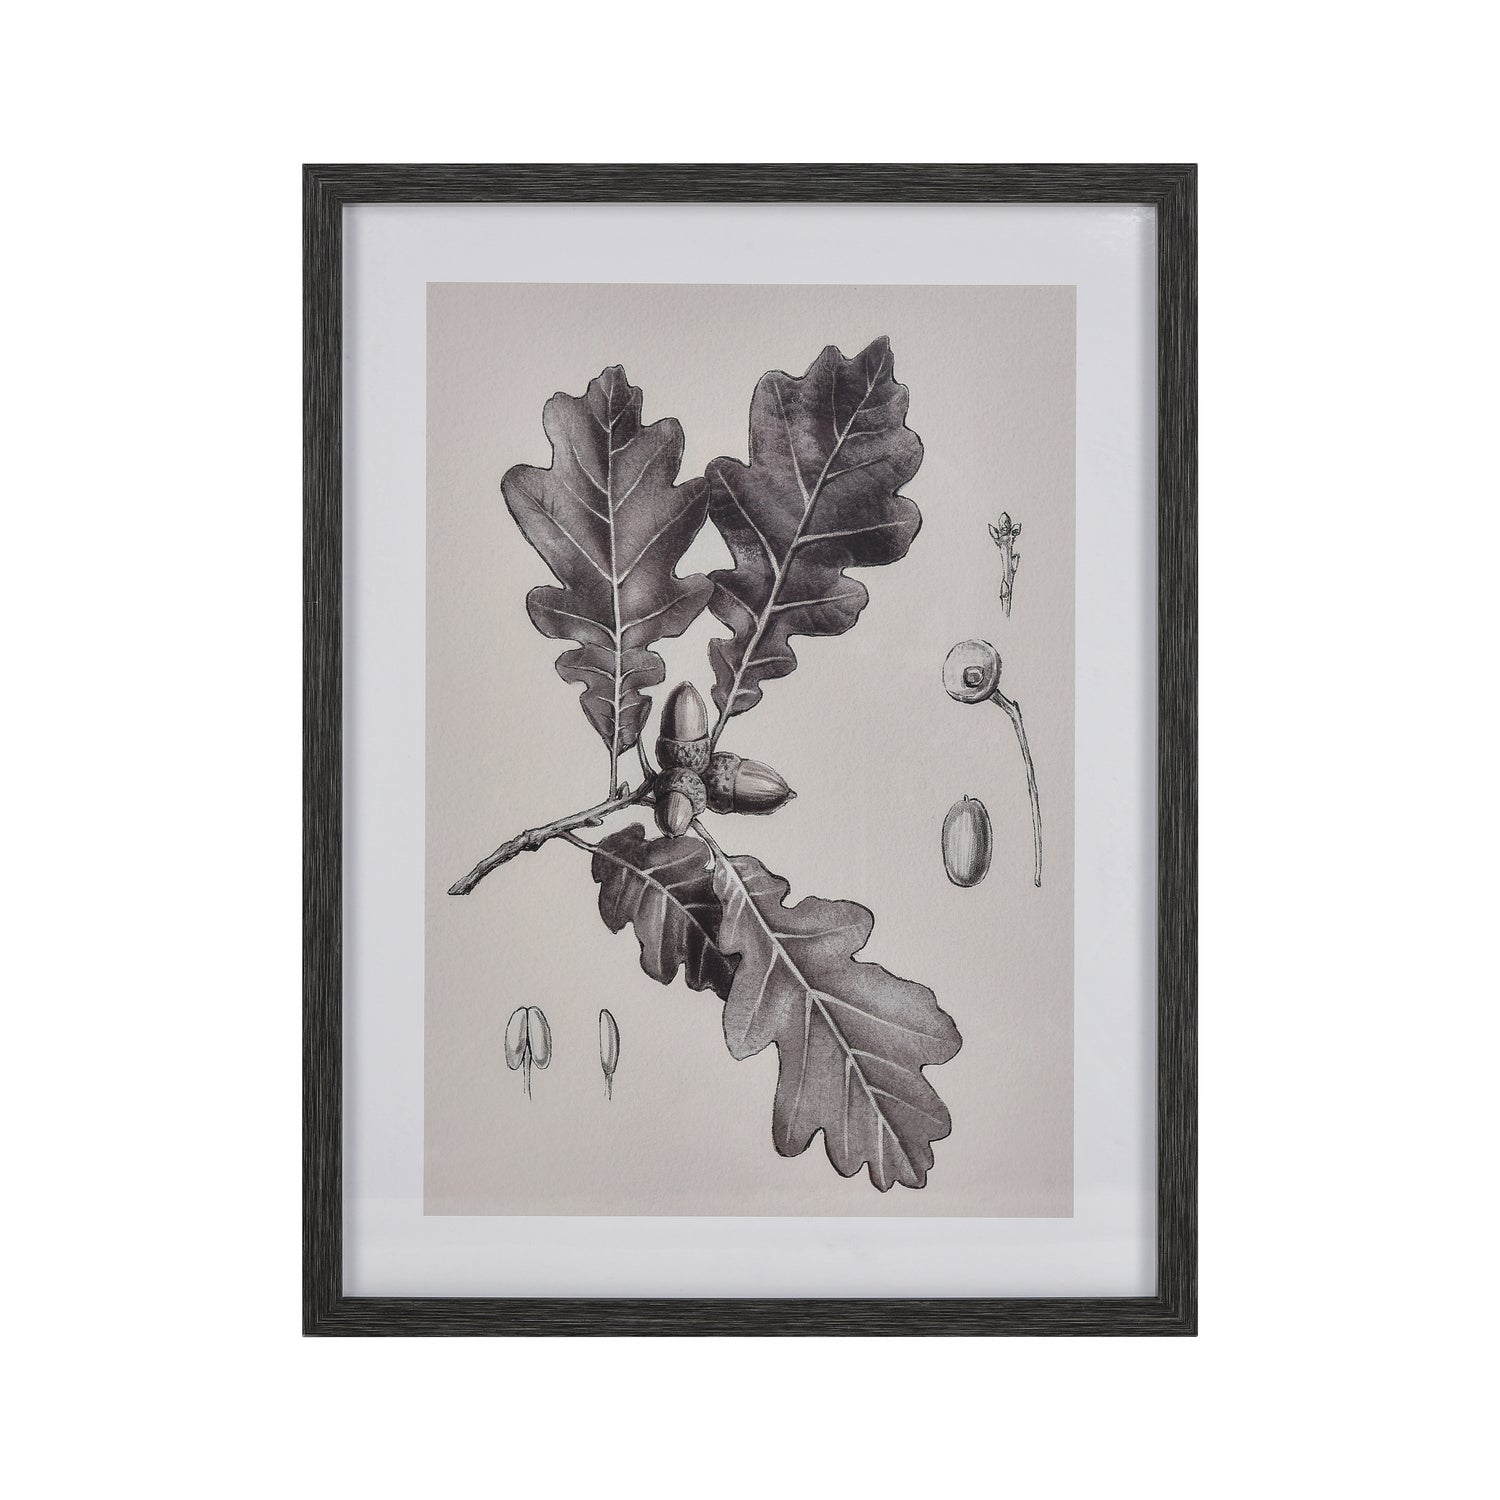 ELK Home - S0056-10636 - Framed Wall Art - Oak Botanic - Black